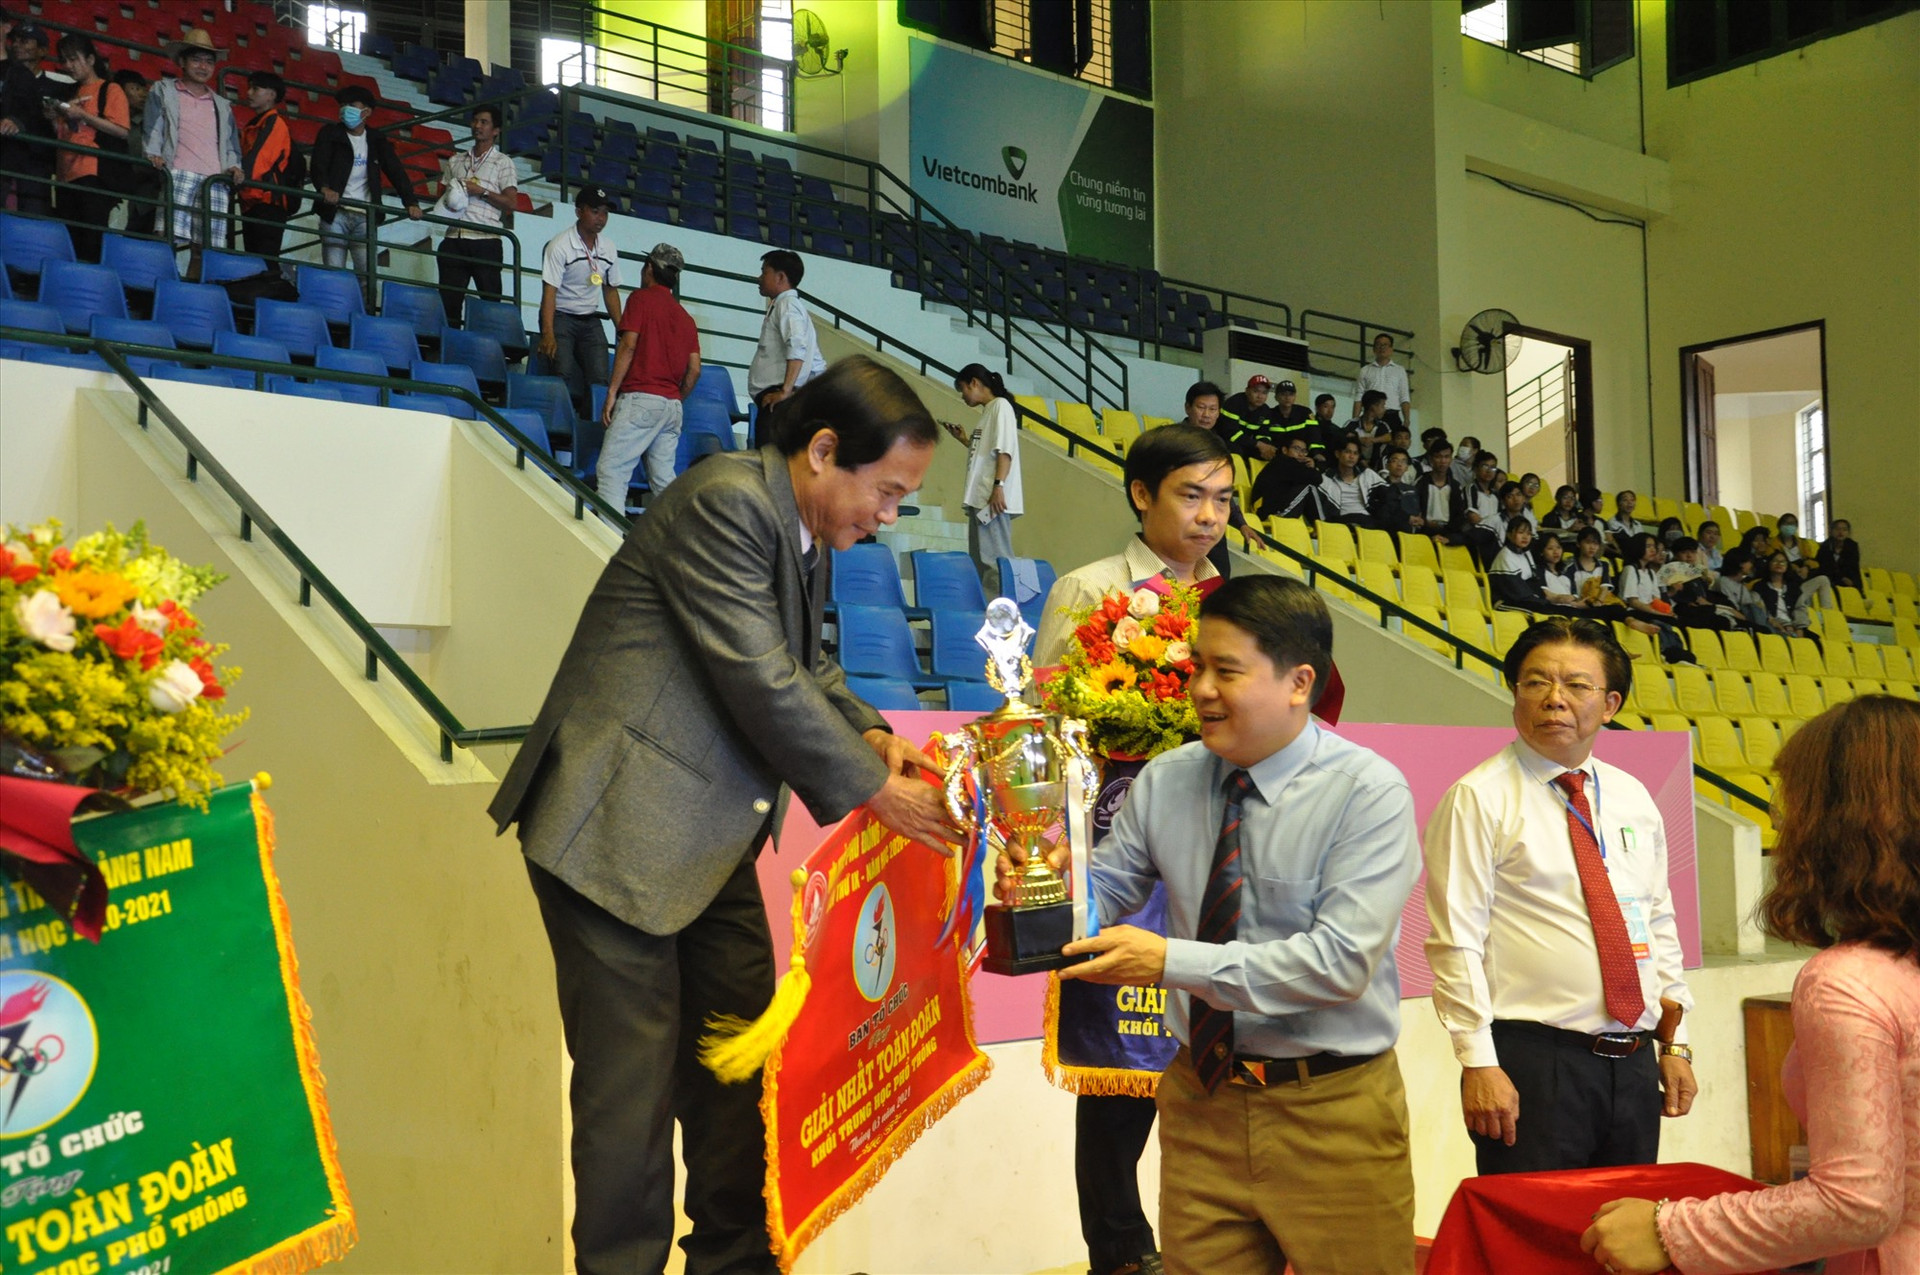 Phó Chủ tịch UBND tỉnh Trần Văn Tân trao cúp toàn đoàn cho Trường THPT chuyên Nguyễn Bỉnh Khiêm. Ảnh: X.P